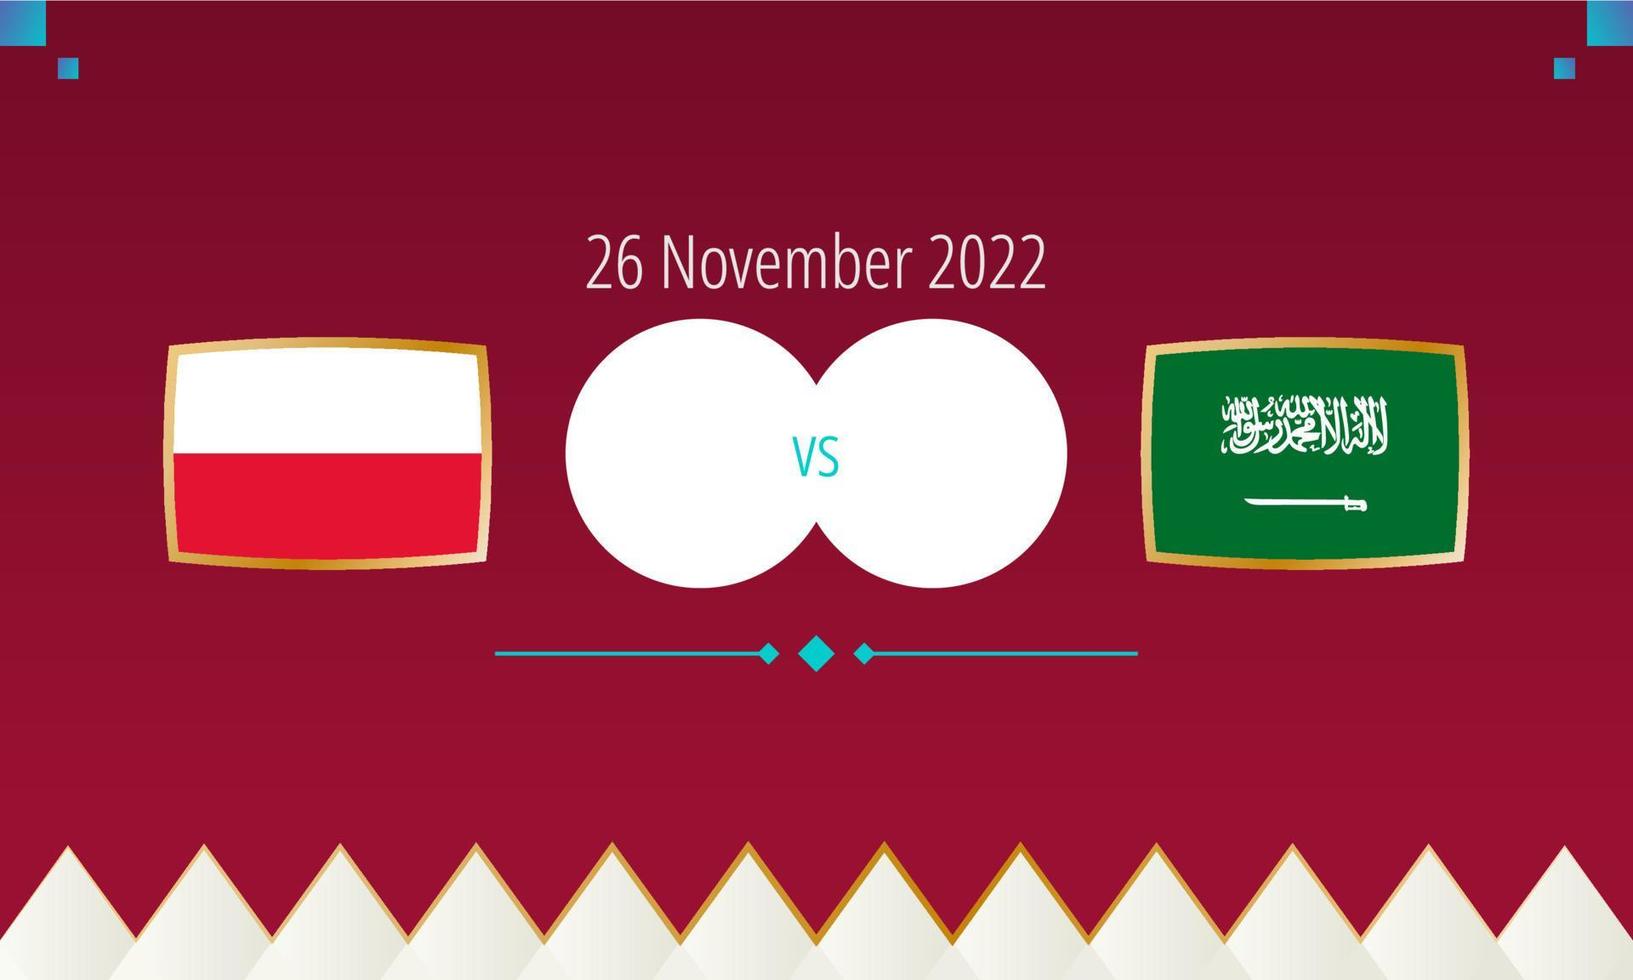 Polonia vs Arabia arabia calcio incontro, internazionale calcio concorrenza 2022. vettore